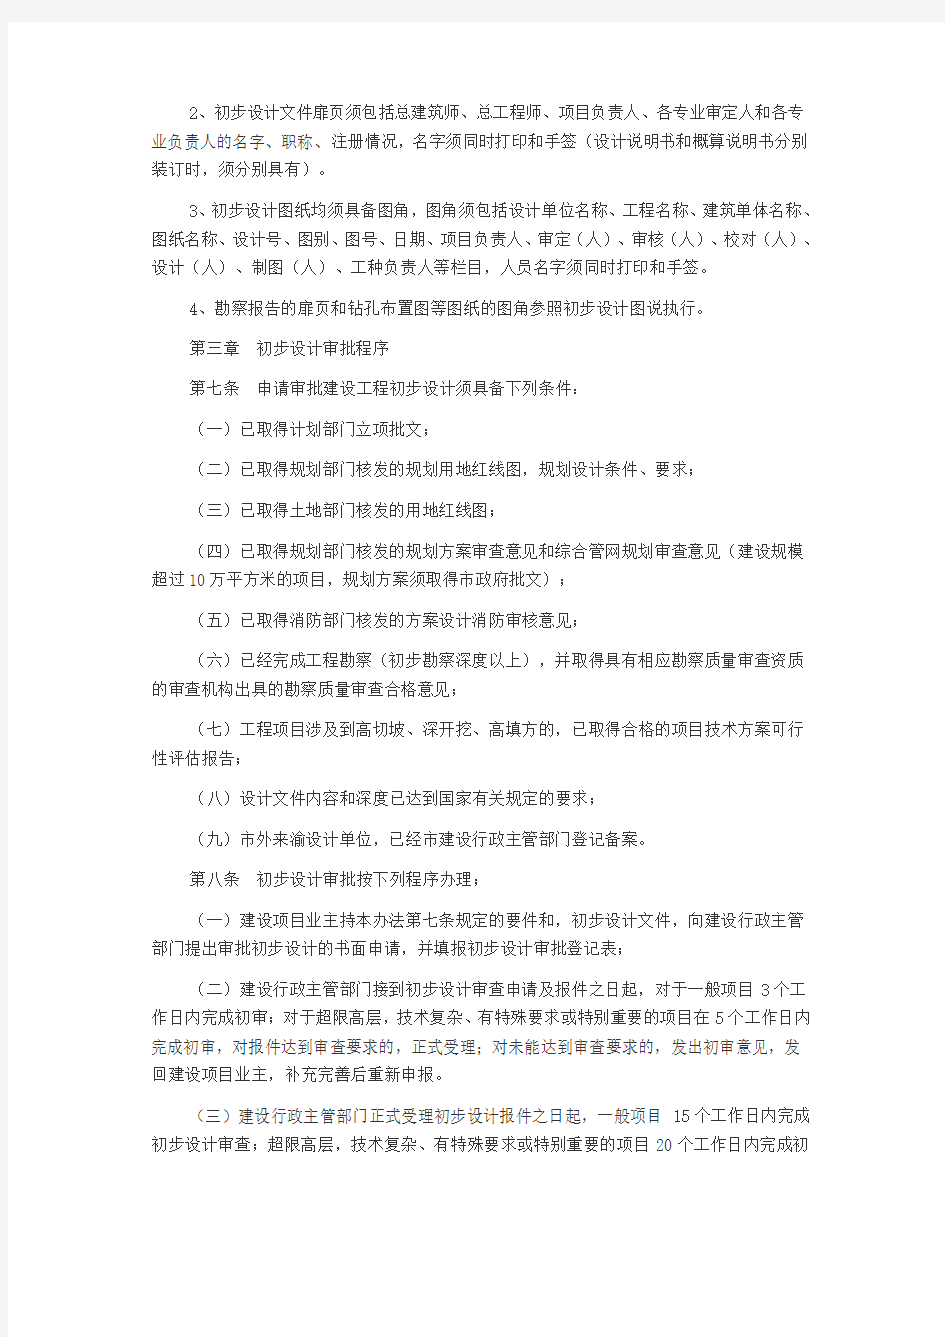 重庆市建设工程初步设计审批管理办法